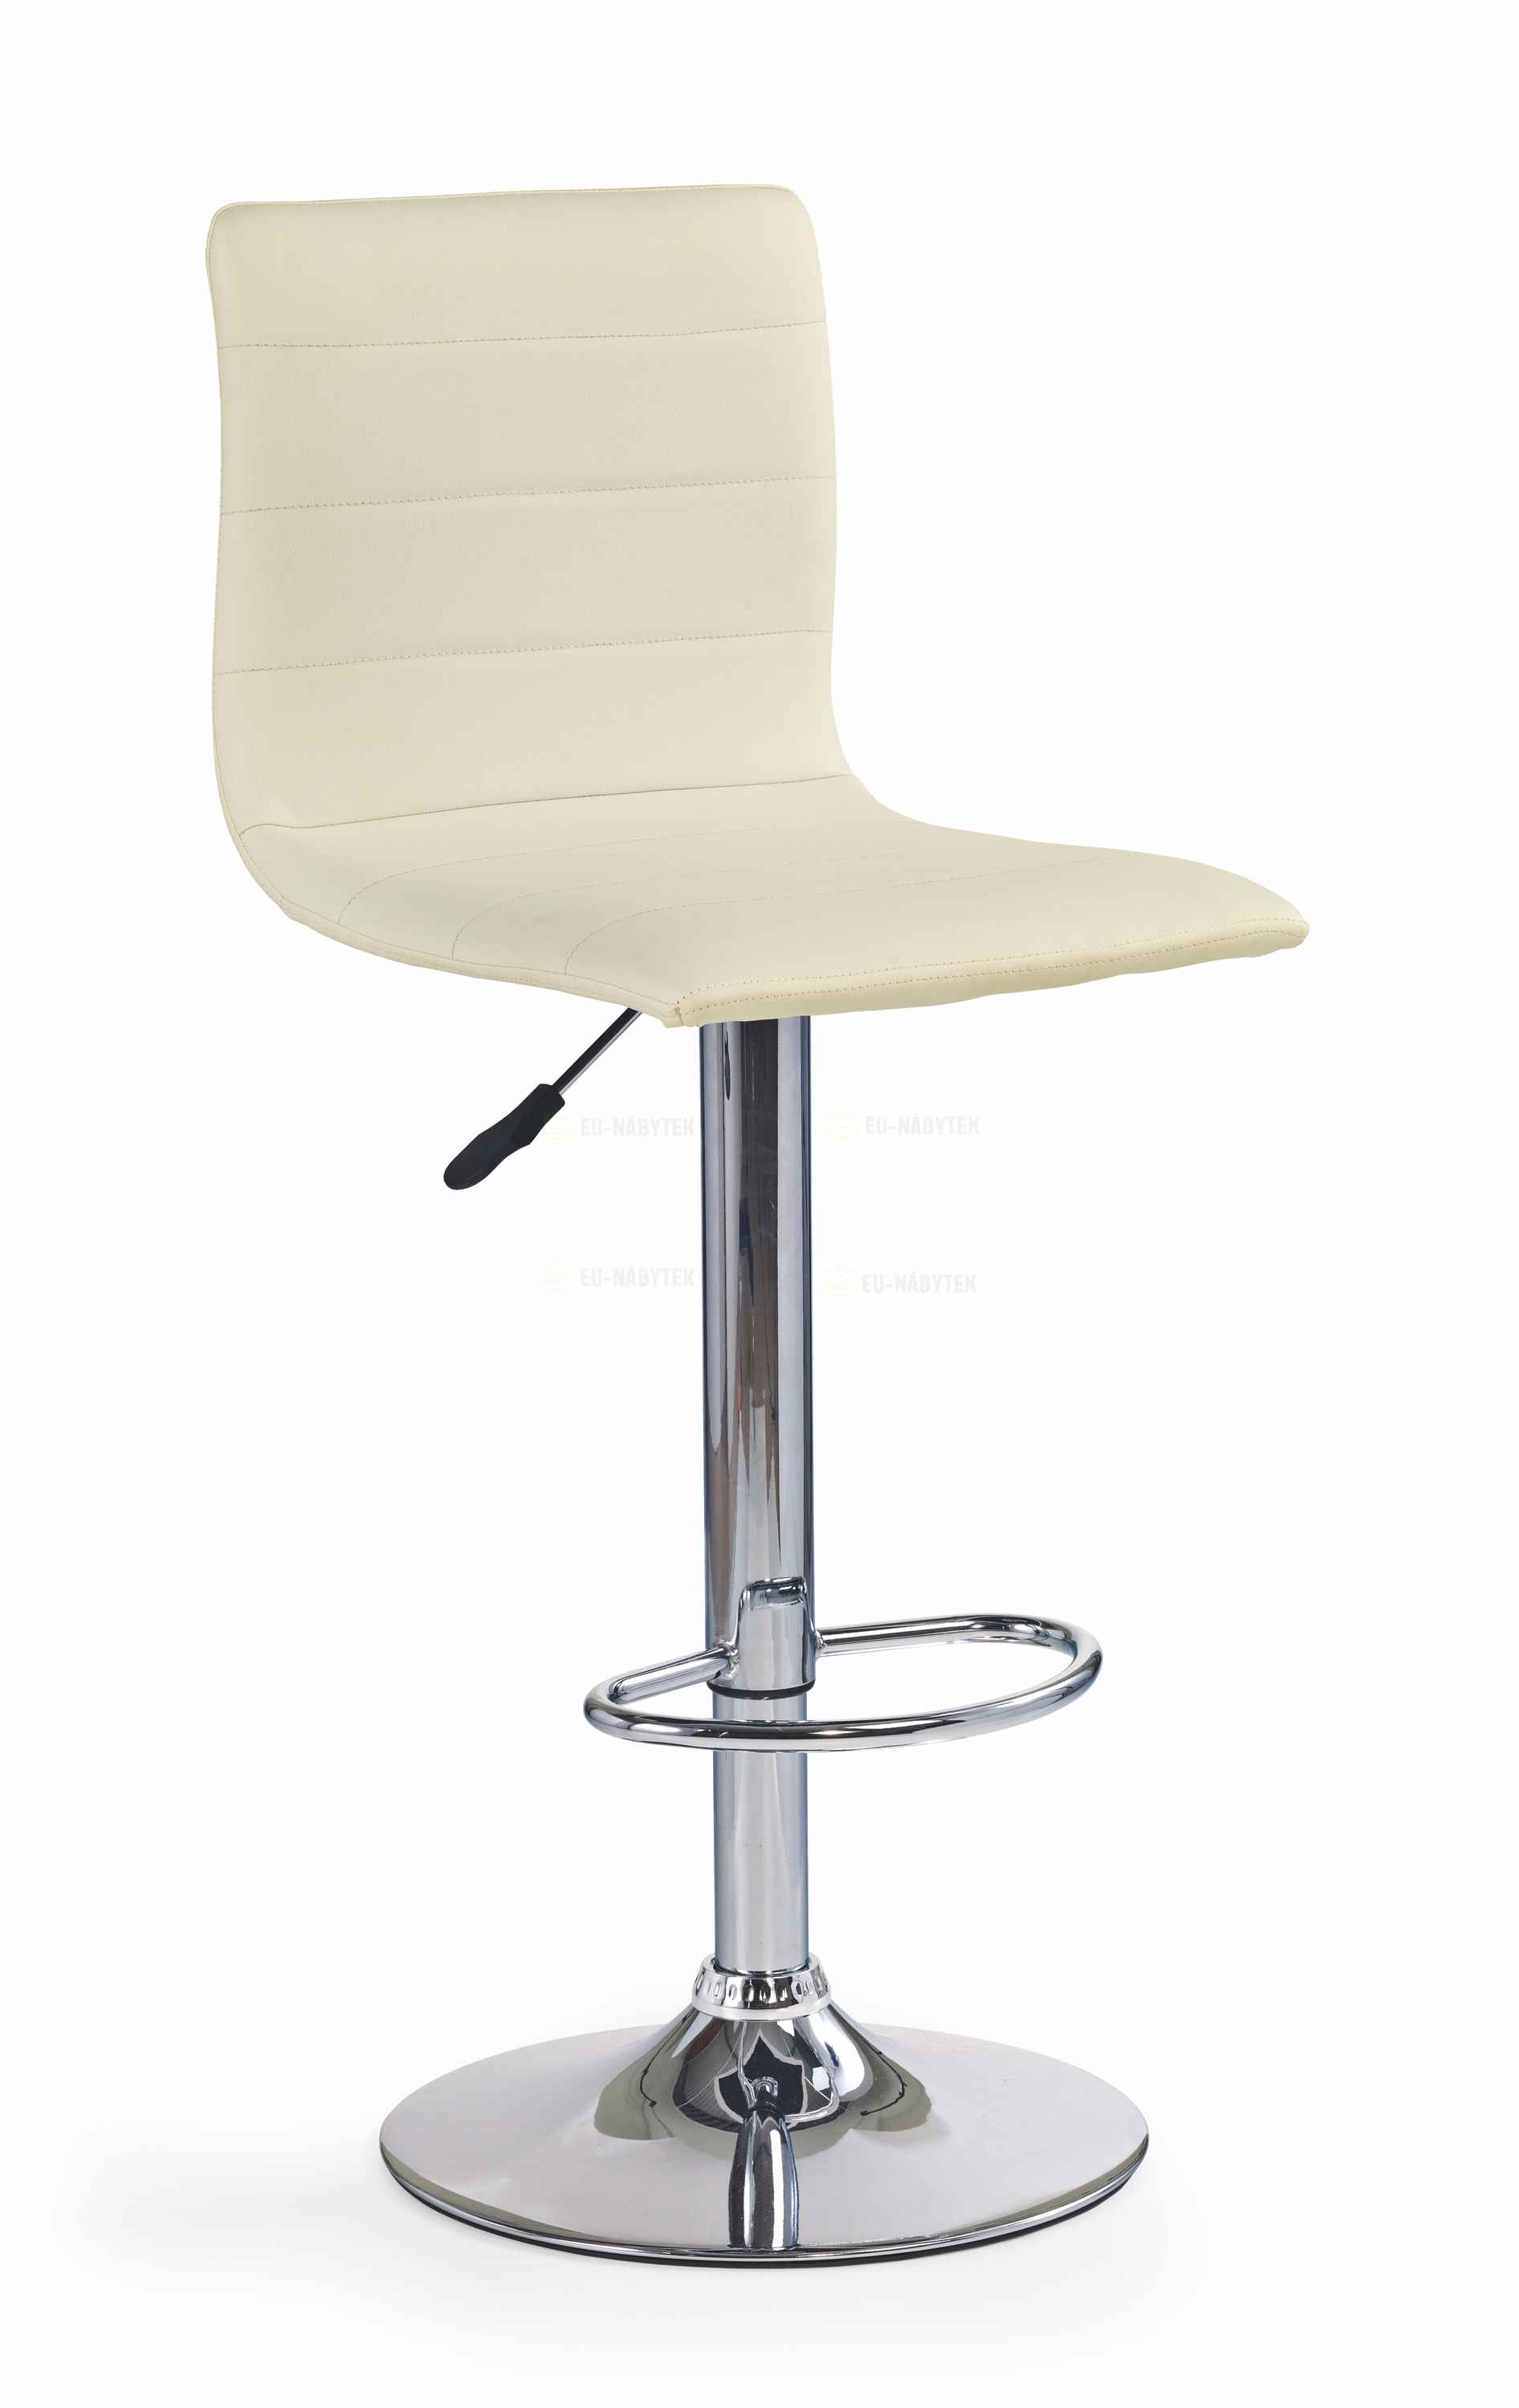 Barová židle H21 krémová